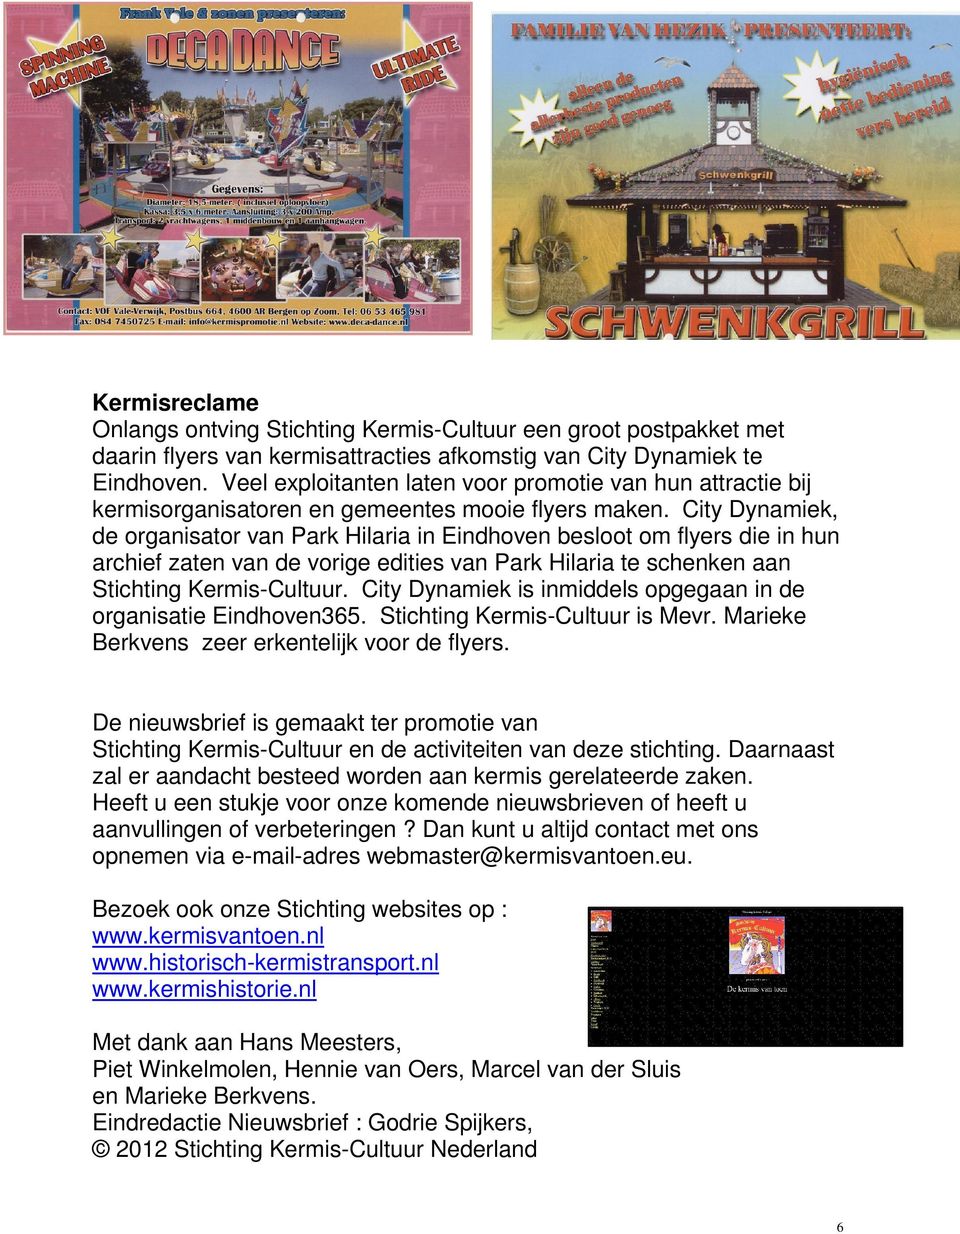 City Dynamiek, de organisator van Park Hilaria in Eindhoven besloot om flyers die in hun archief zaten van de vorige edities van Park Hilaria te schenken aan Stichting Kermis-Cultuur.